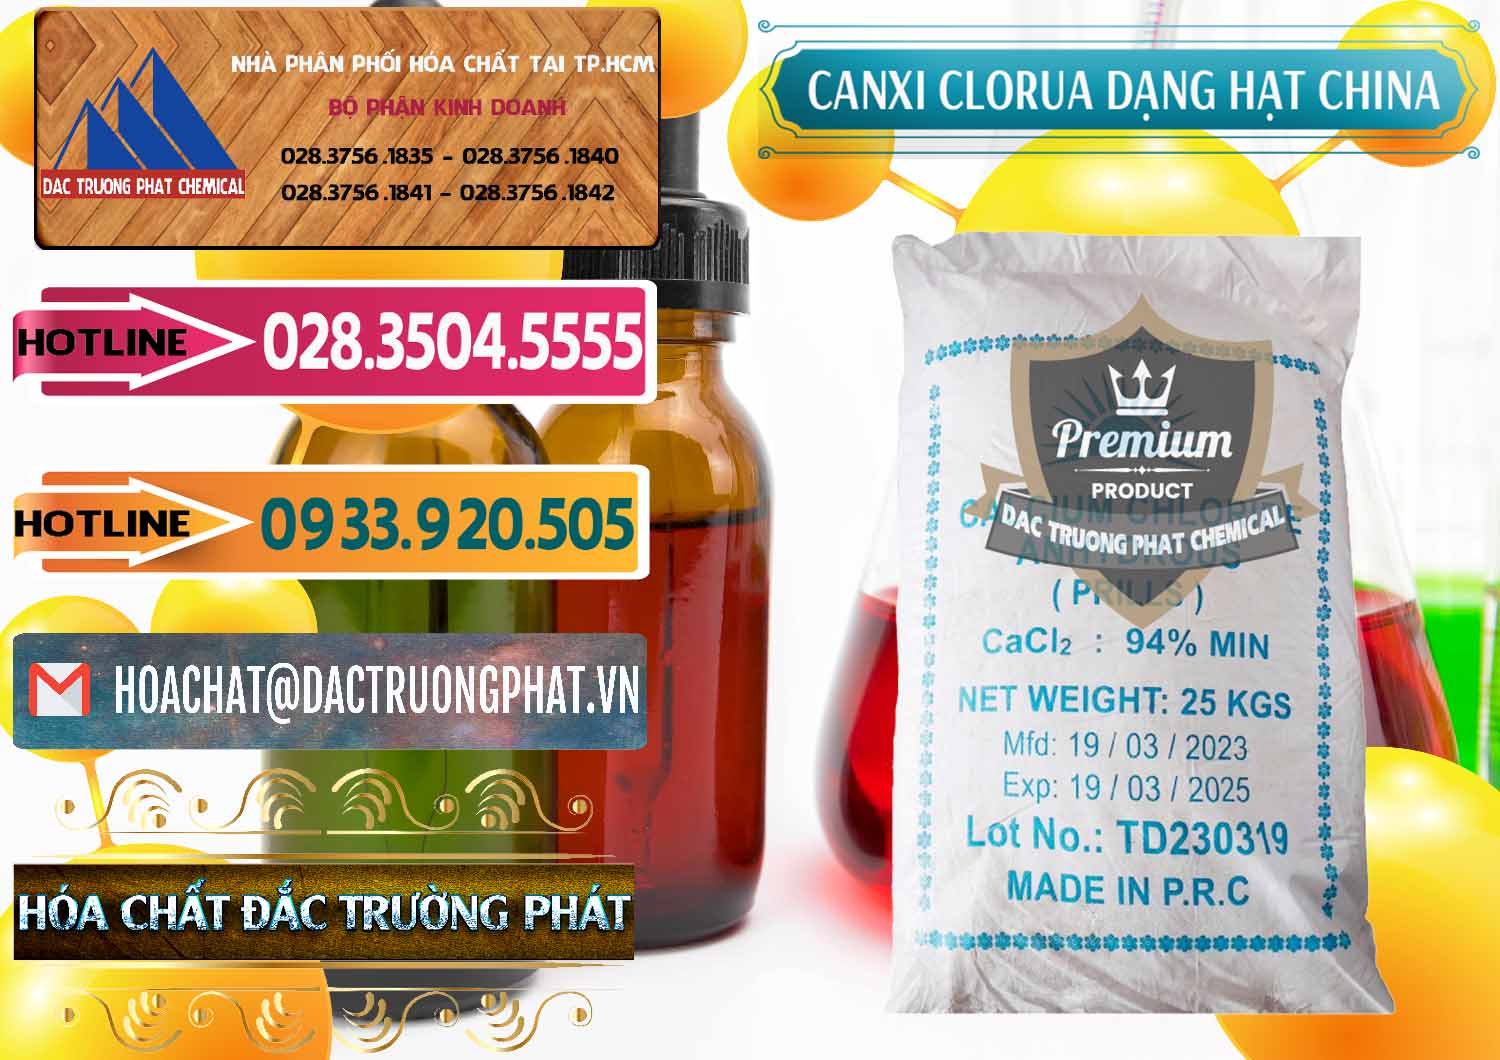 Công ty kinh doanh _ bán CaCl2 – Canxi Clorua 94% Dạng Hạt Trung Quốc China - 0373 - Đơn vị phân phối ( bán ) hóa chất tại TP.HCM - dactruongphat.vn